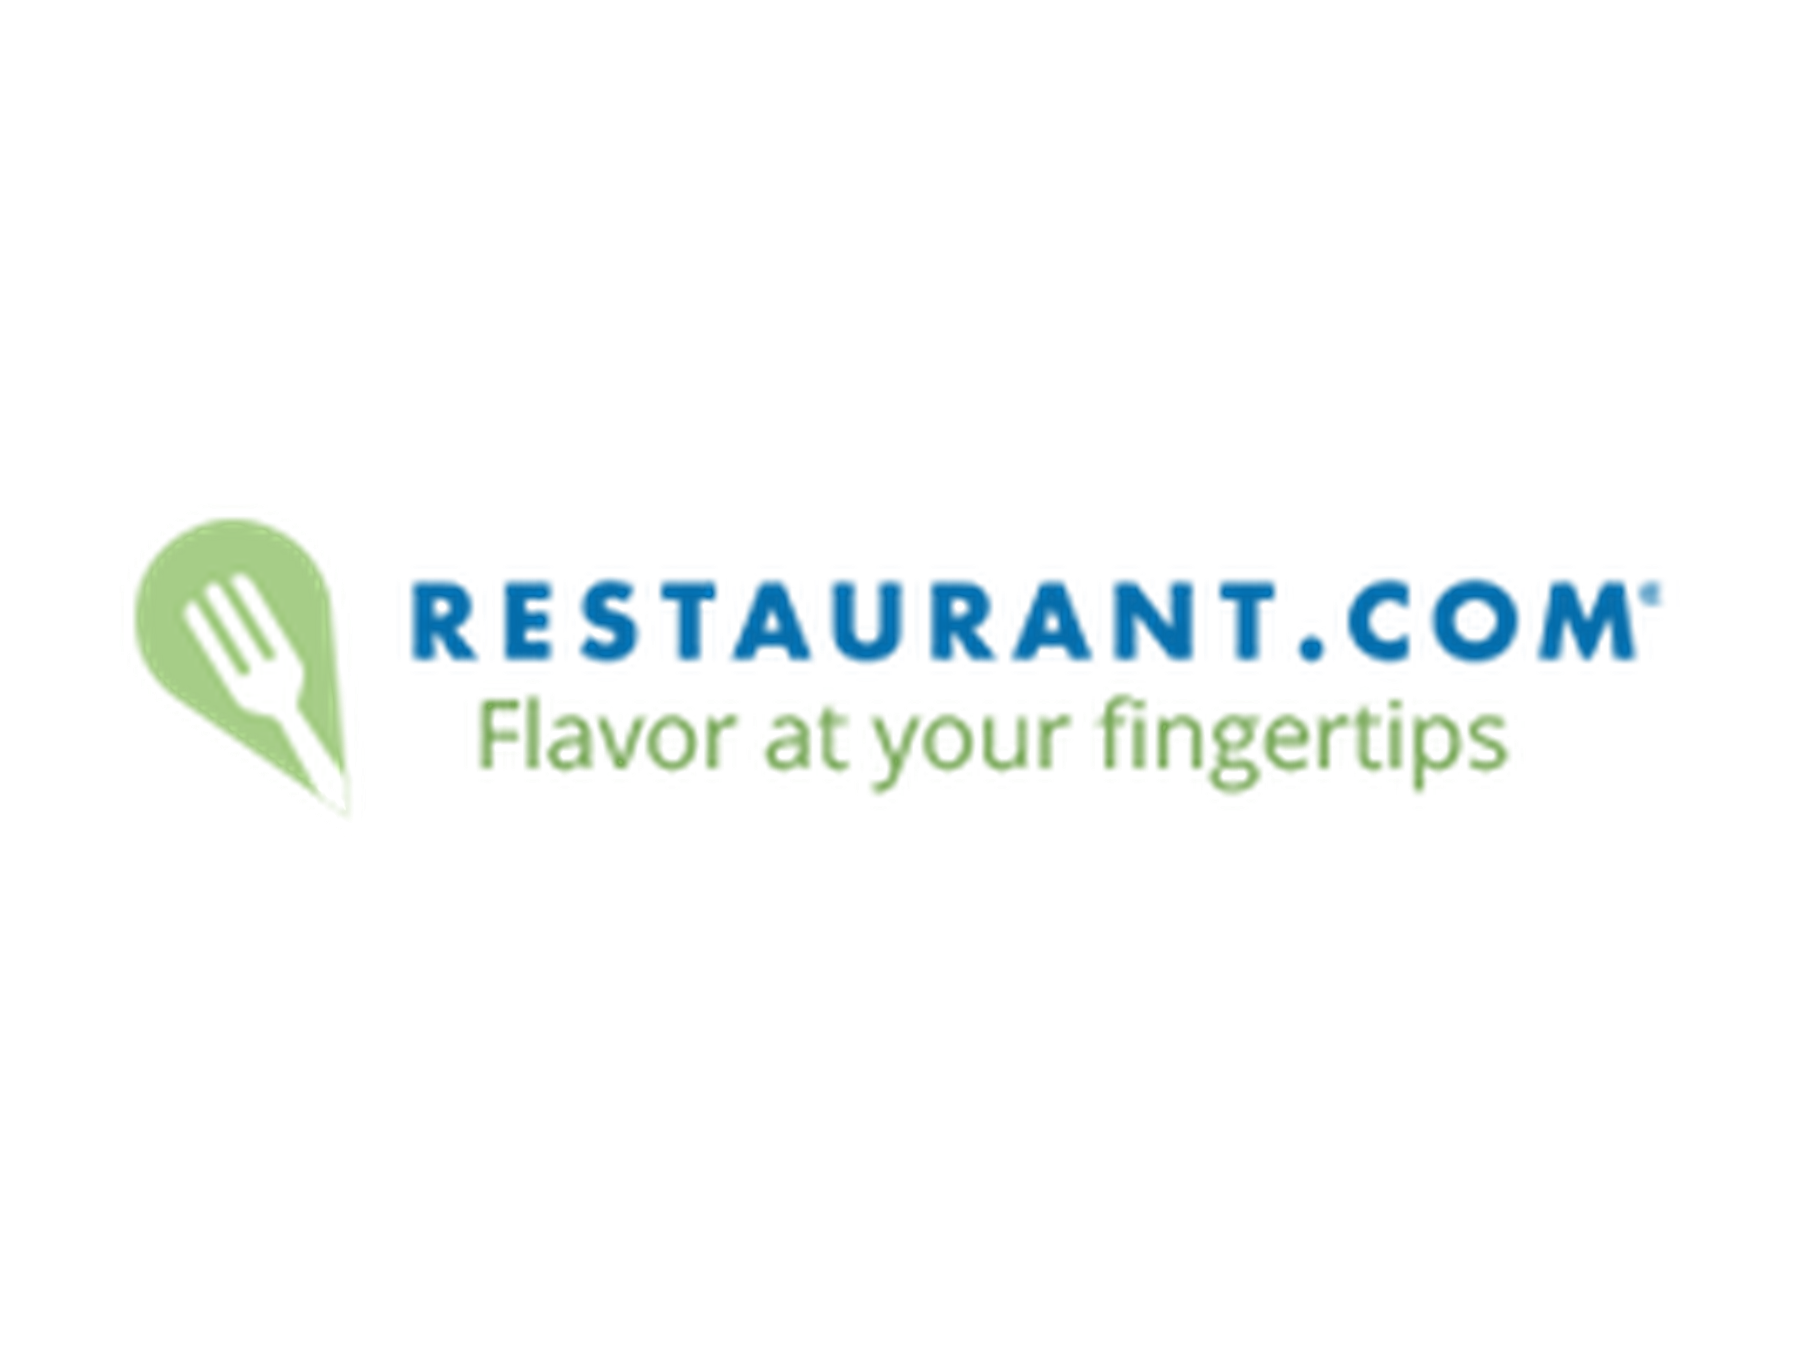 Restaurant.com Coupons